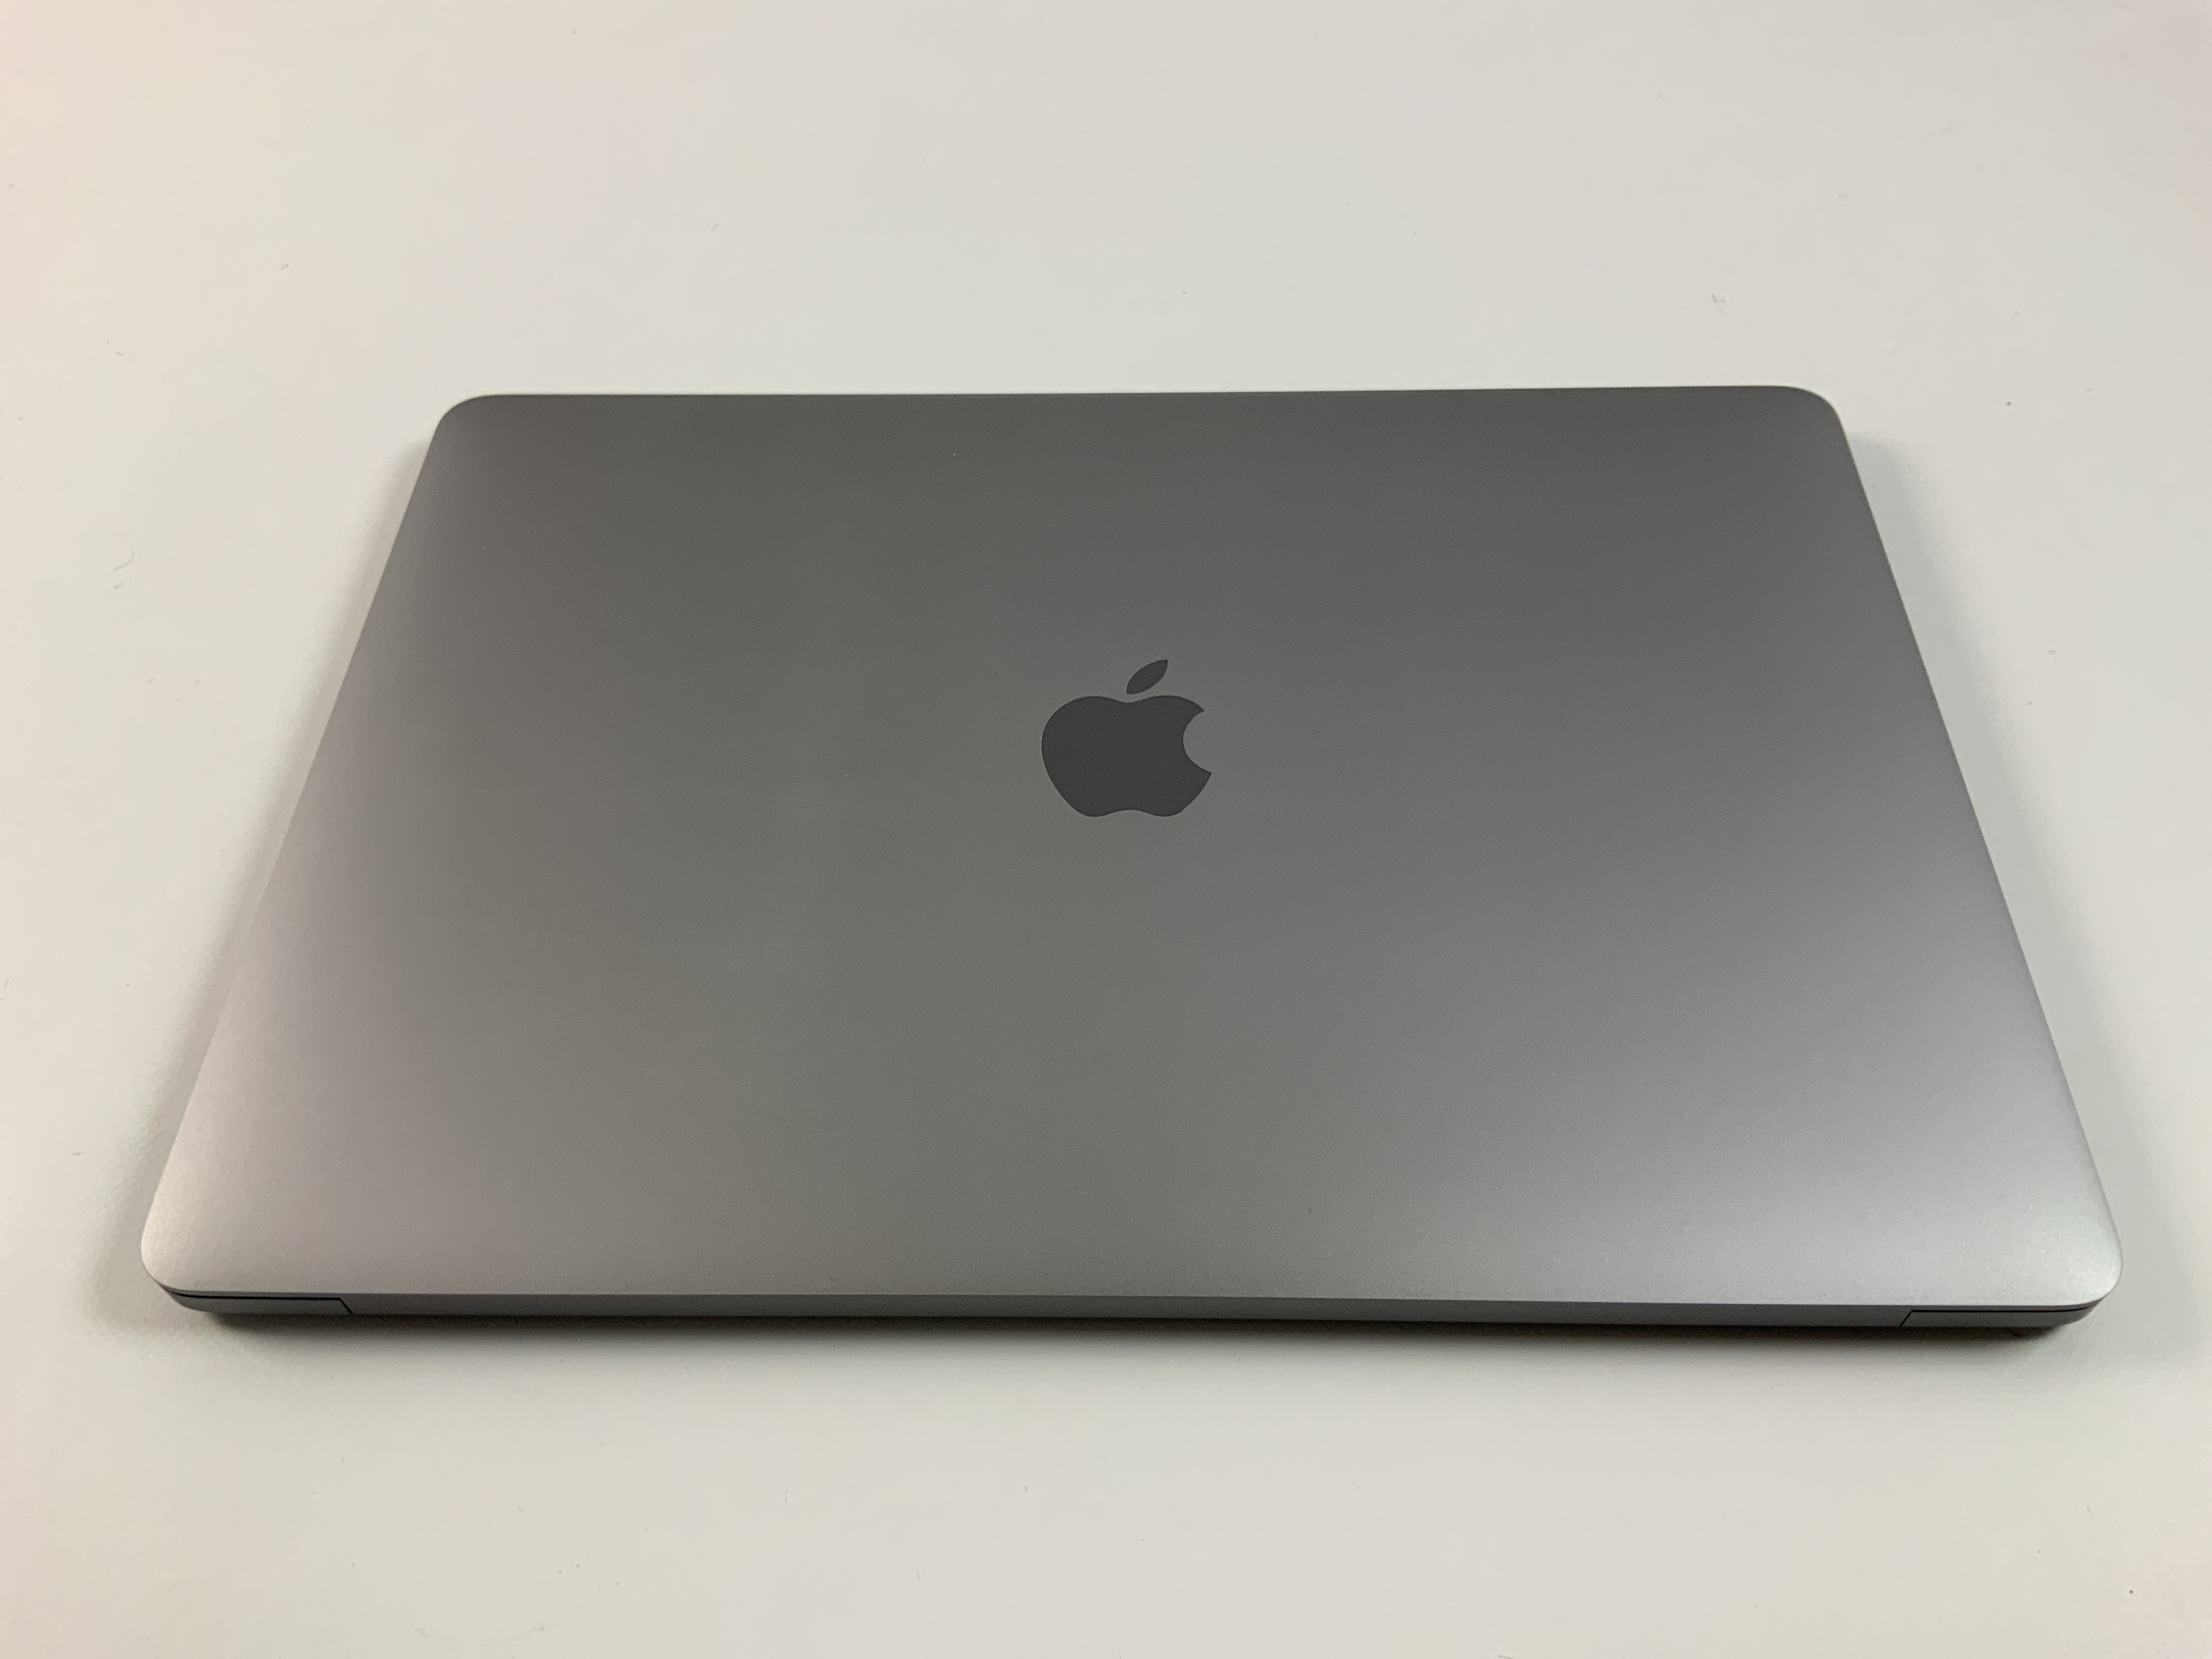 MacBook Pro 13" 4TBT Mid 2019 (Intel Quad-Core i7 2.8 GHz 16 GB RAM 256 GB SSD), Space Gray, Intel Quad-Core i7 2.8 GHz, 16 GB RAM, 256 GB SSD, bild 2